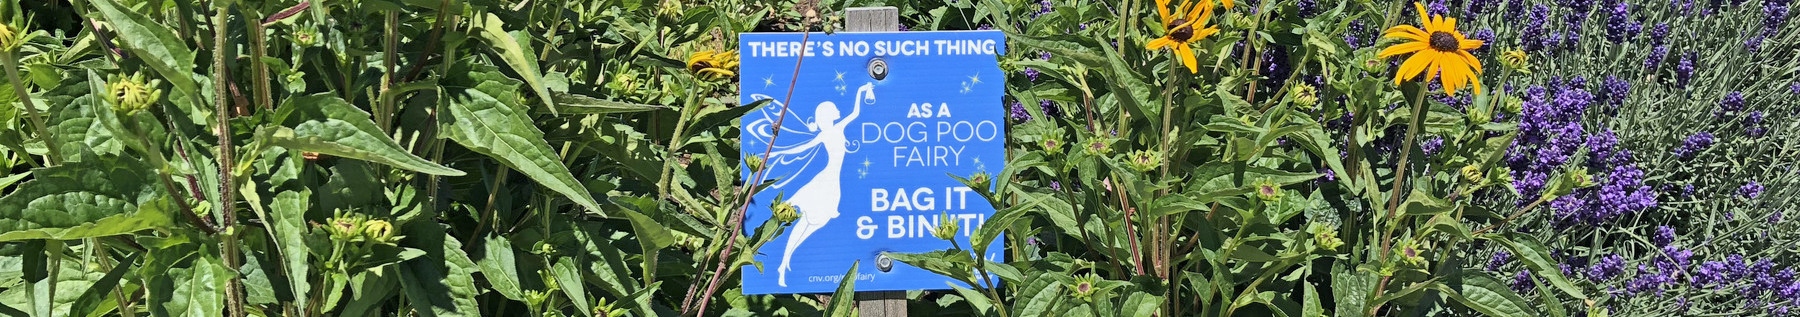 Poo Fairy sign in garden